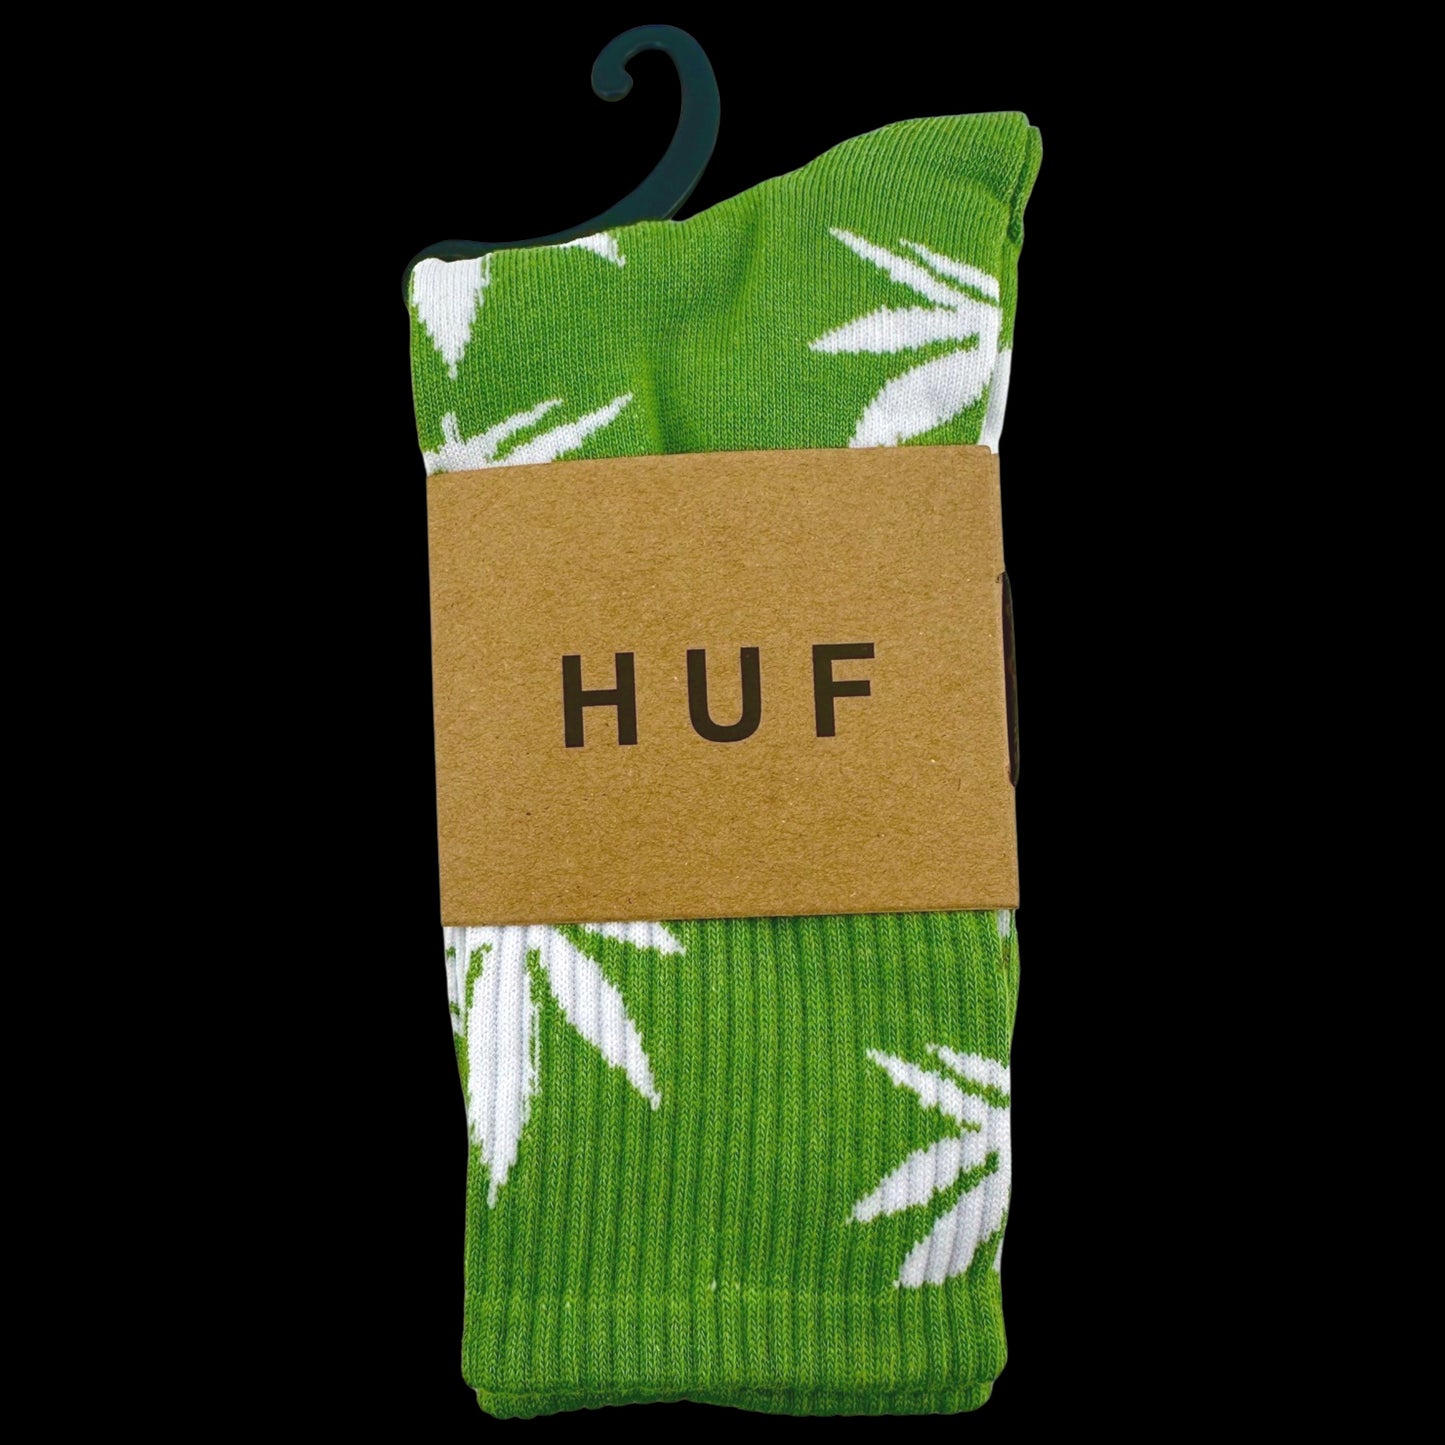 Huf weed socks